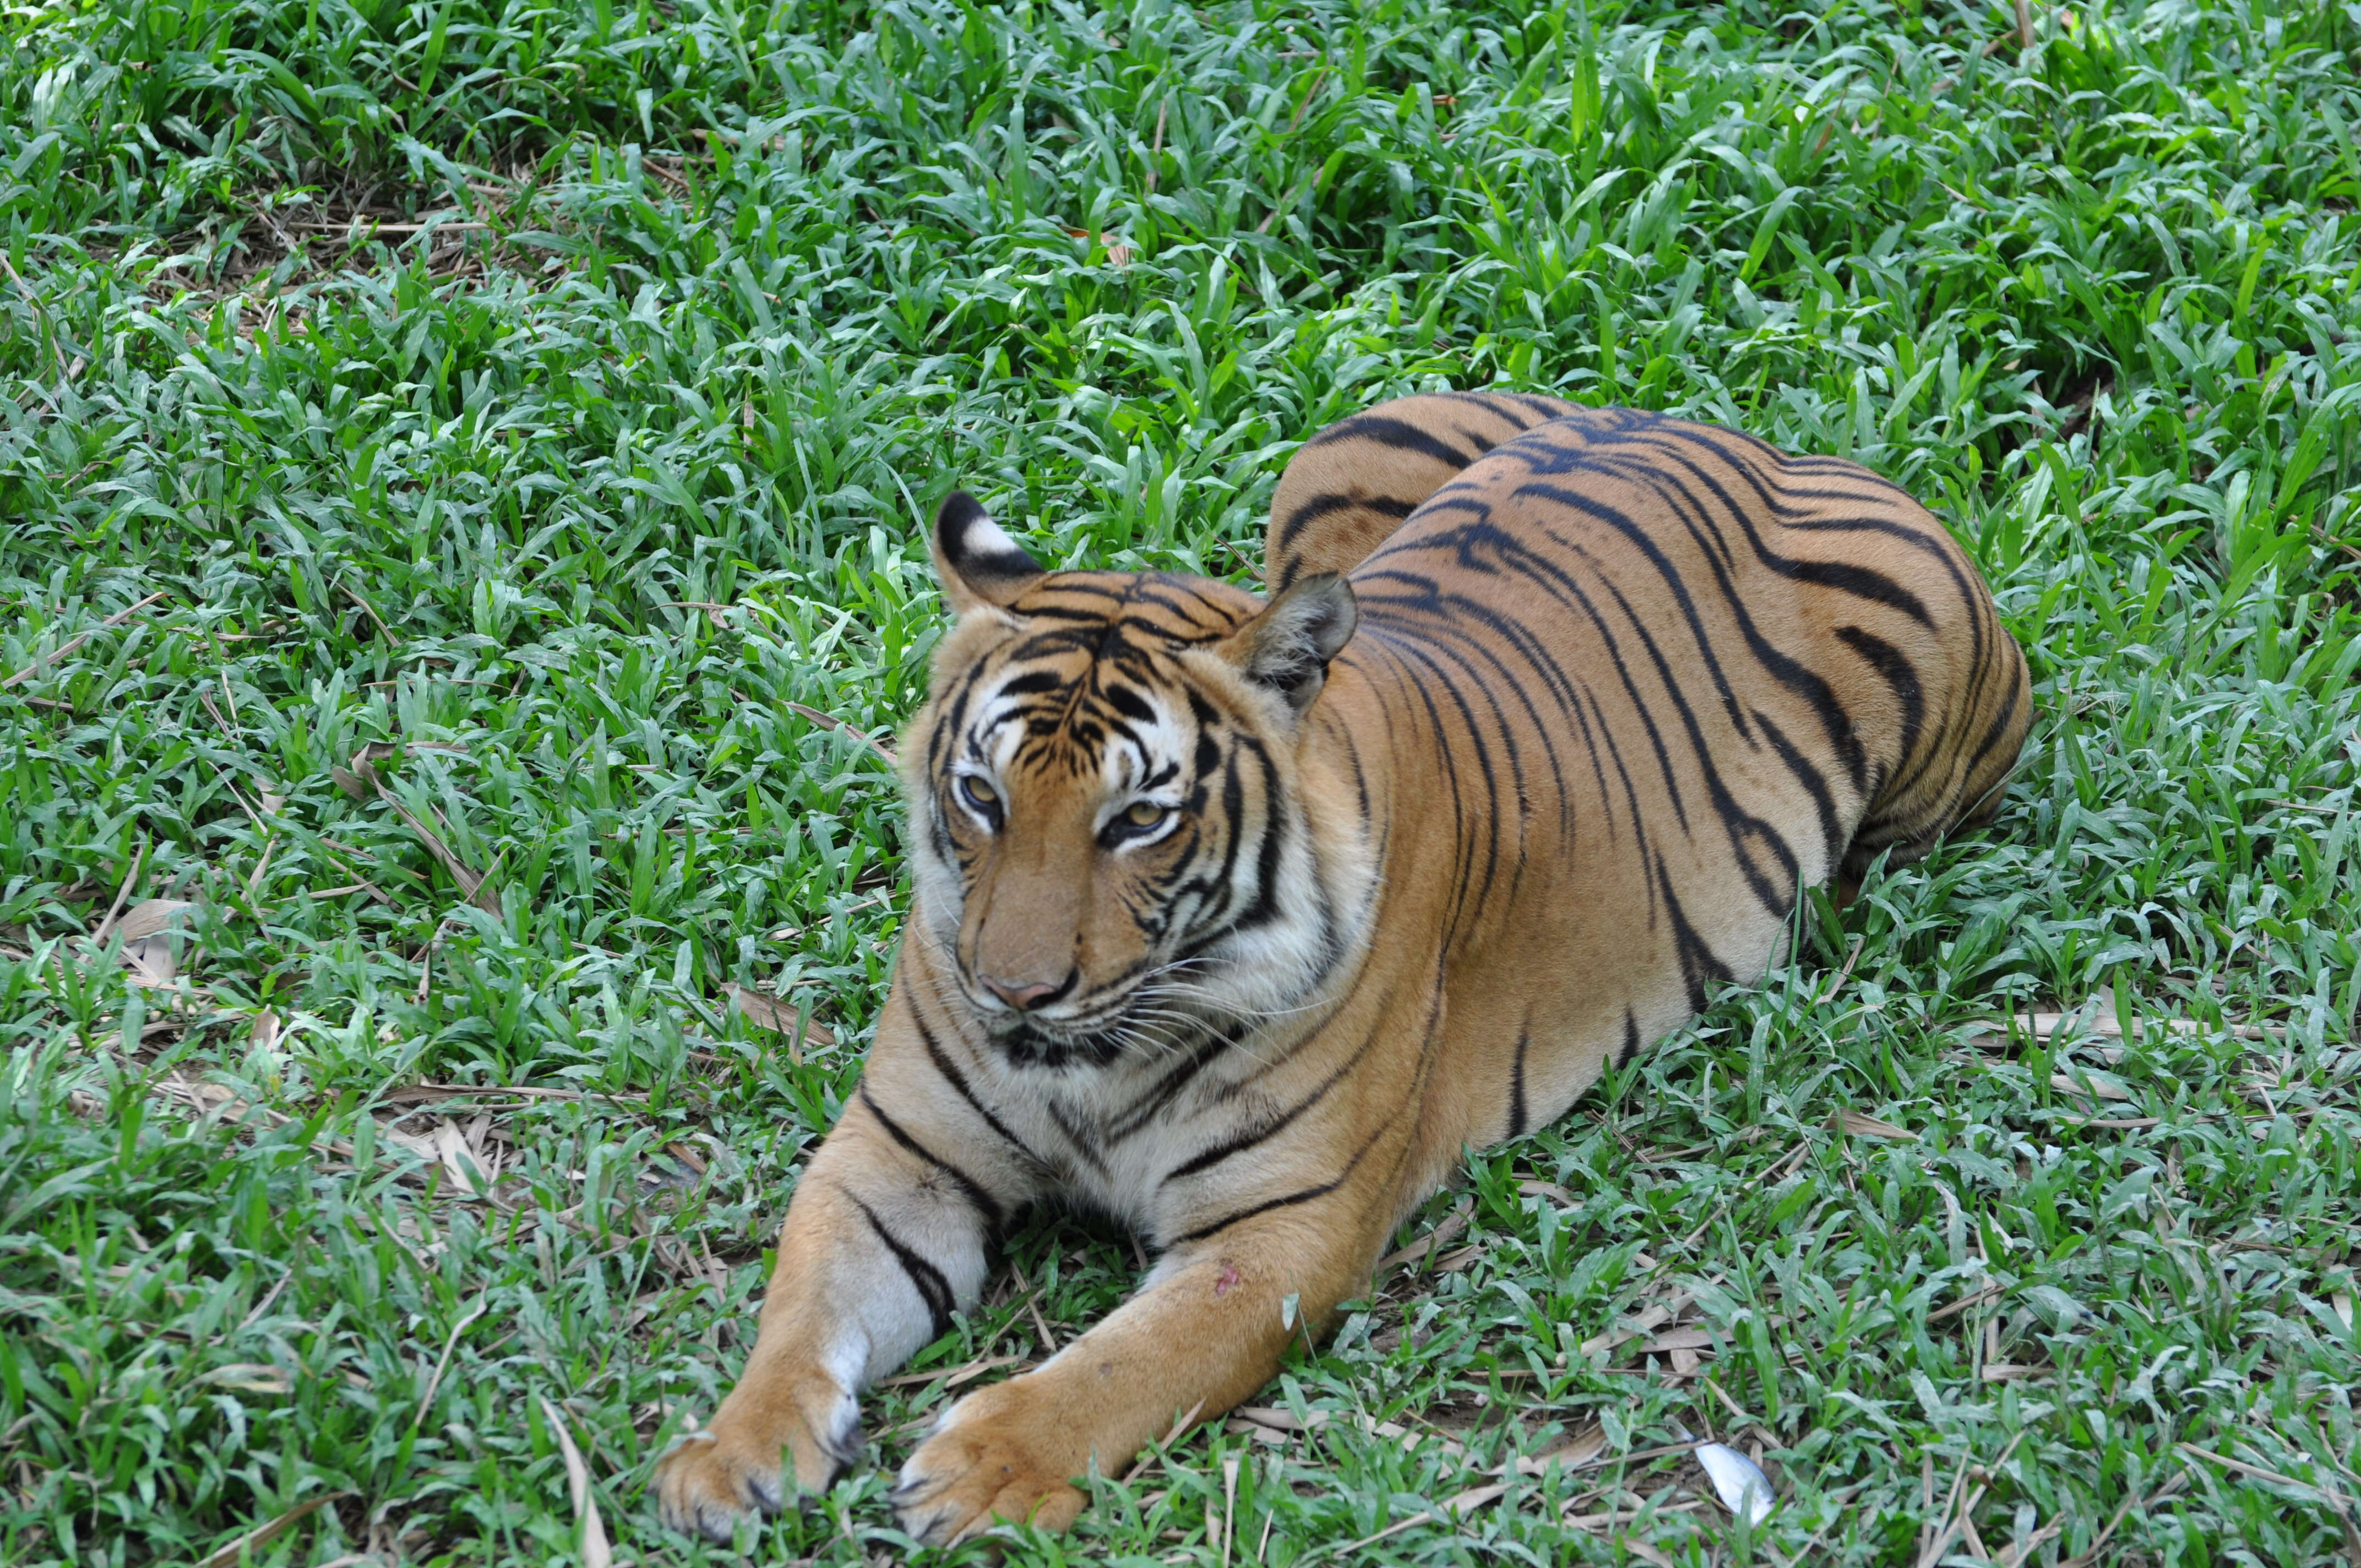 Image of Sumatran Tiger